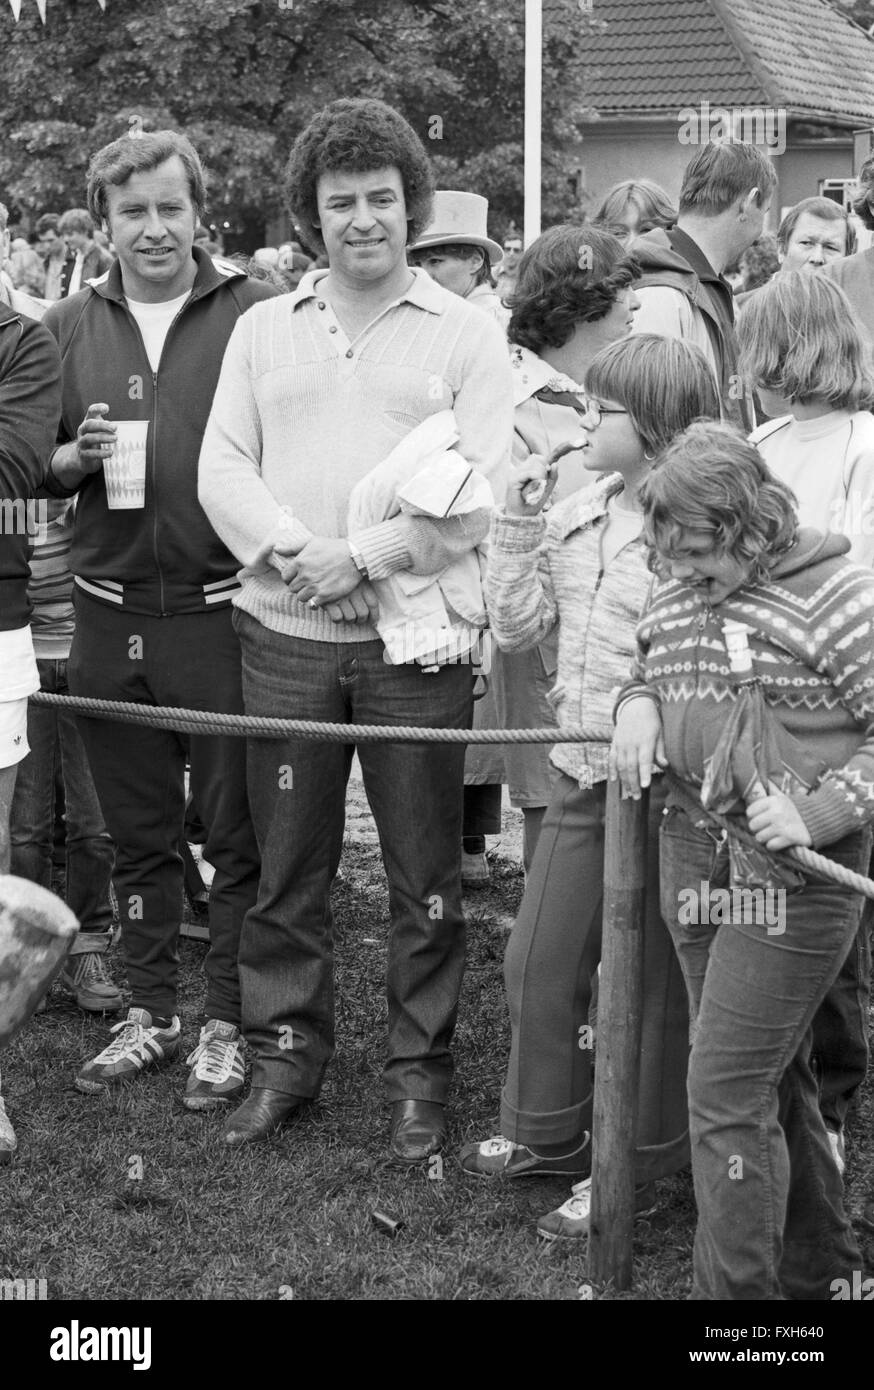 Der Deutsche gerade Tony Marshall als Zuschauer Bei Einem Jogginglauf, 1980er Jahre Deutschland. Deutscher Schlagersänger Tony Marshall beobachten bei einem jogging Event, Deutschland der 1980er Jahre. 24x36swNegV185 Stockfoto